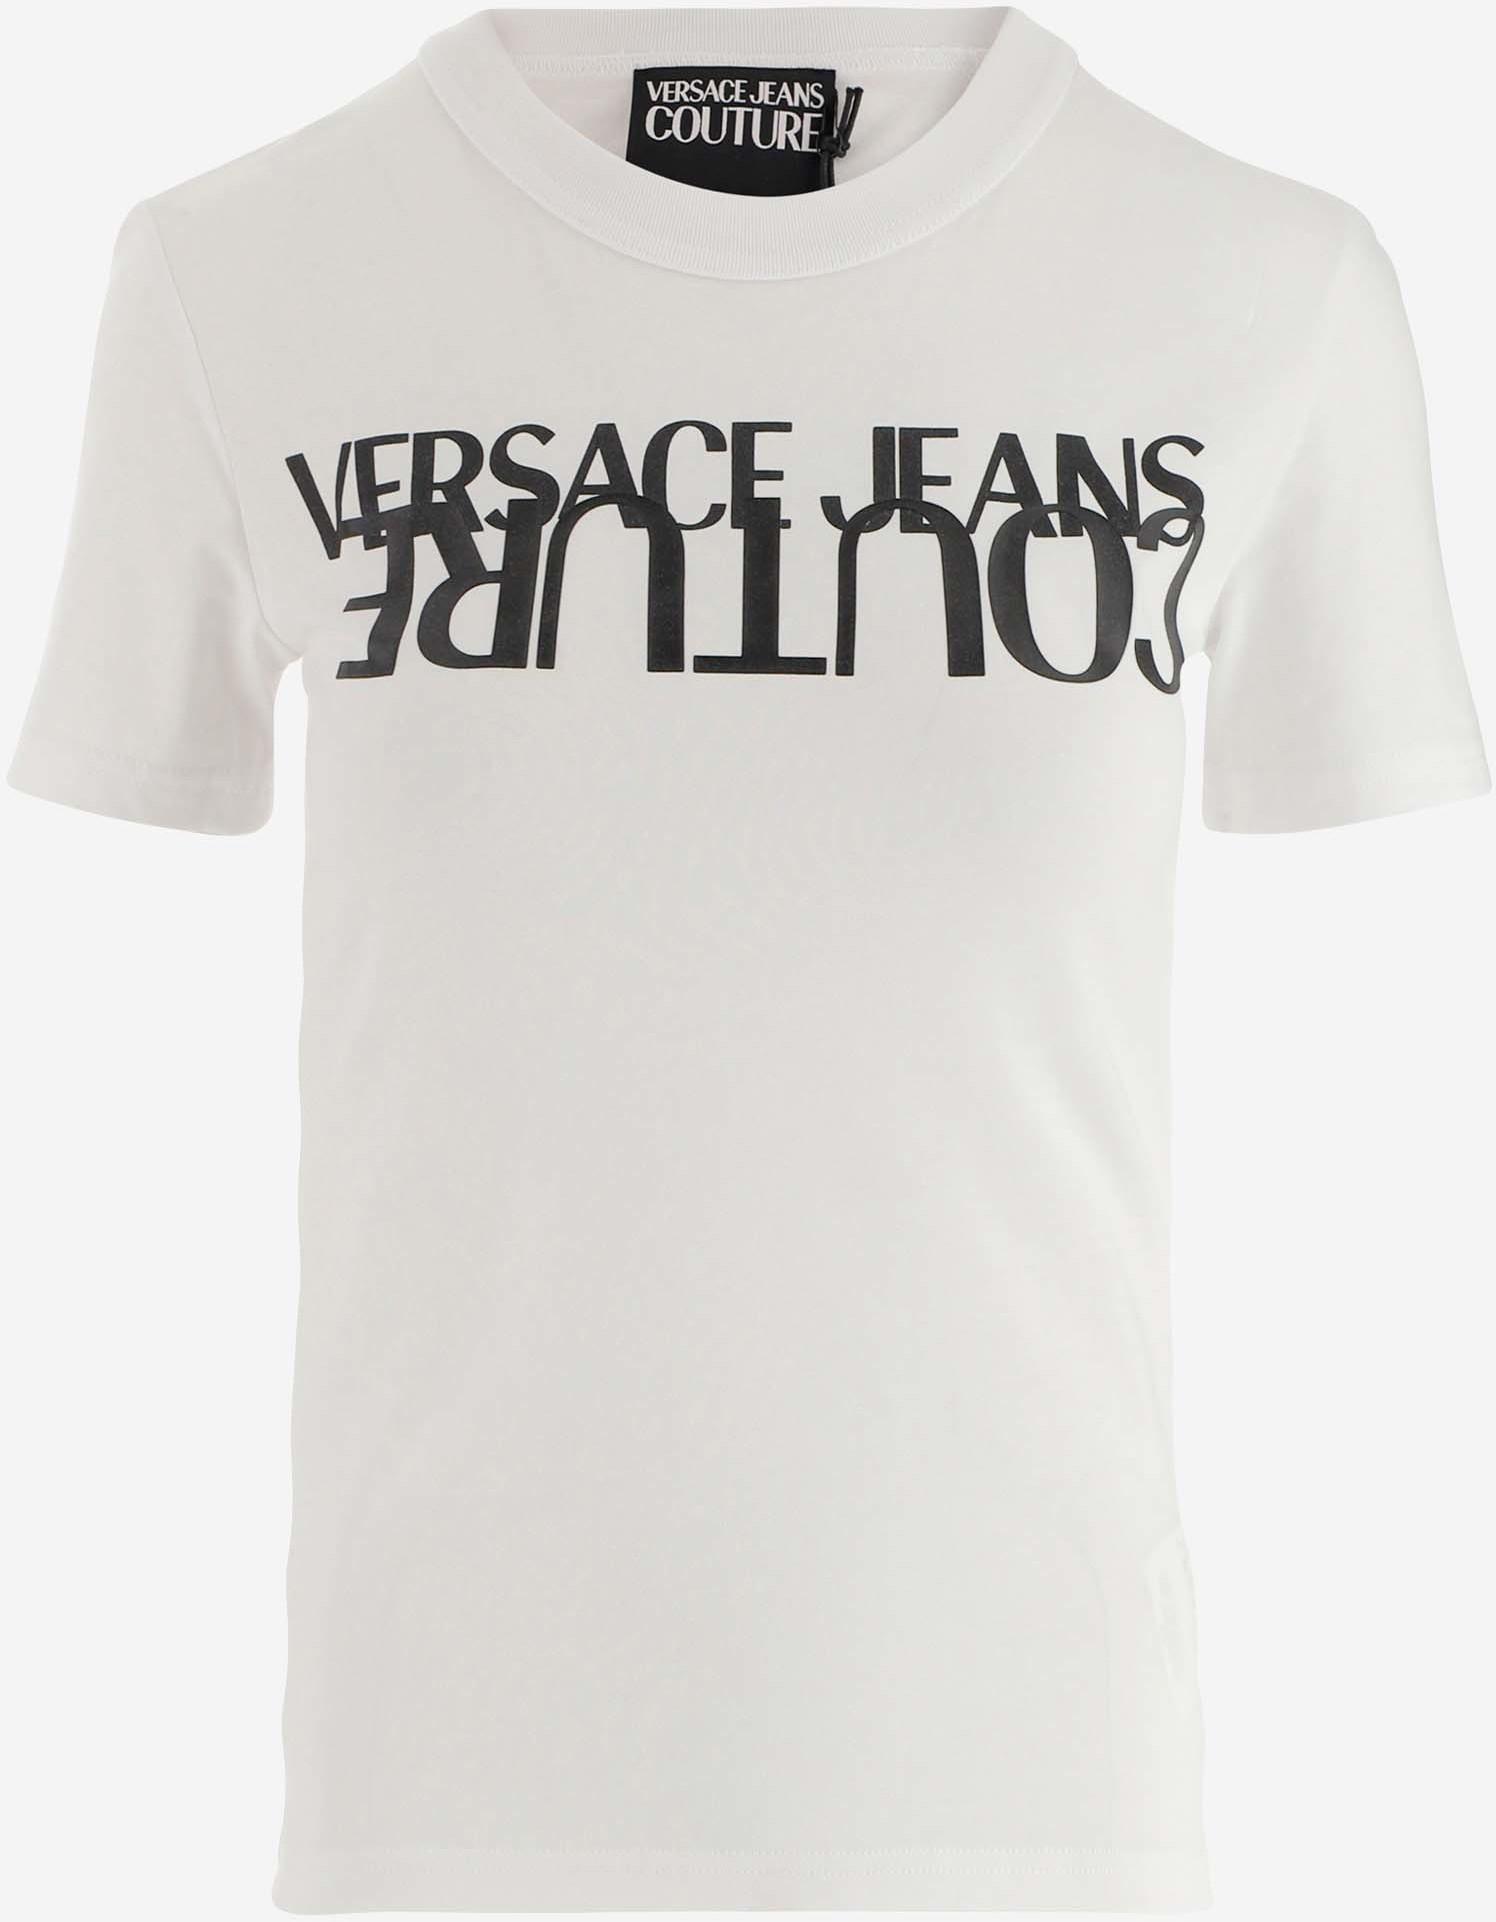 versace jeans t shirt women's